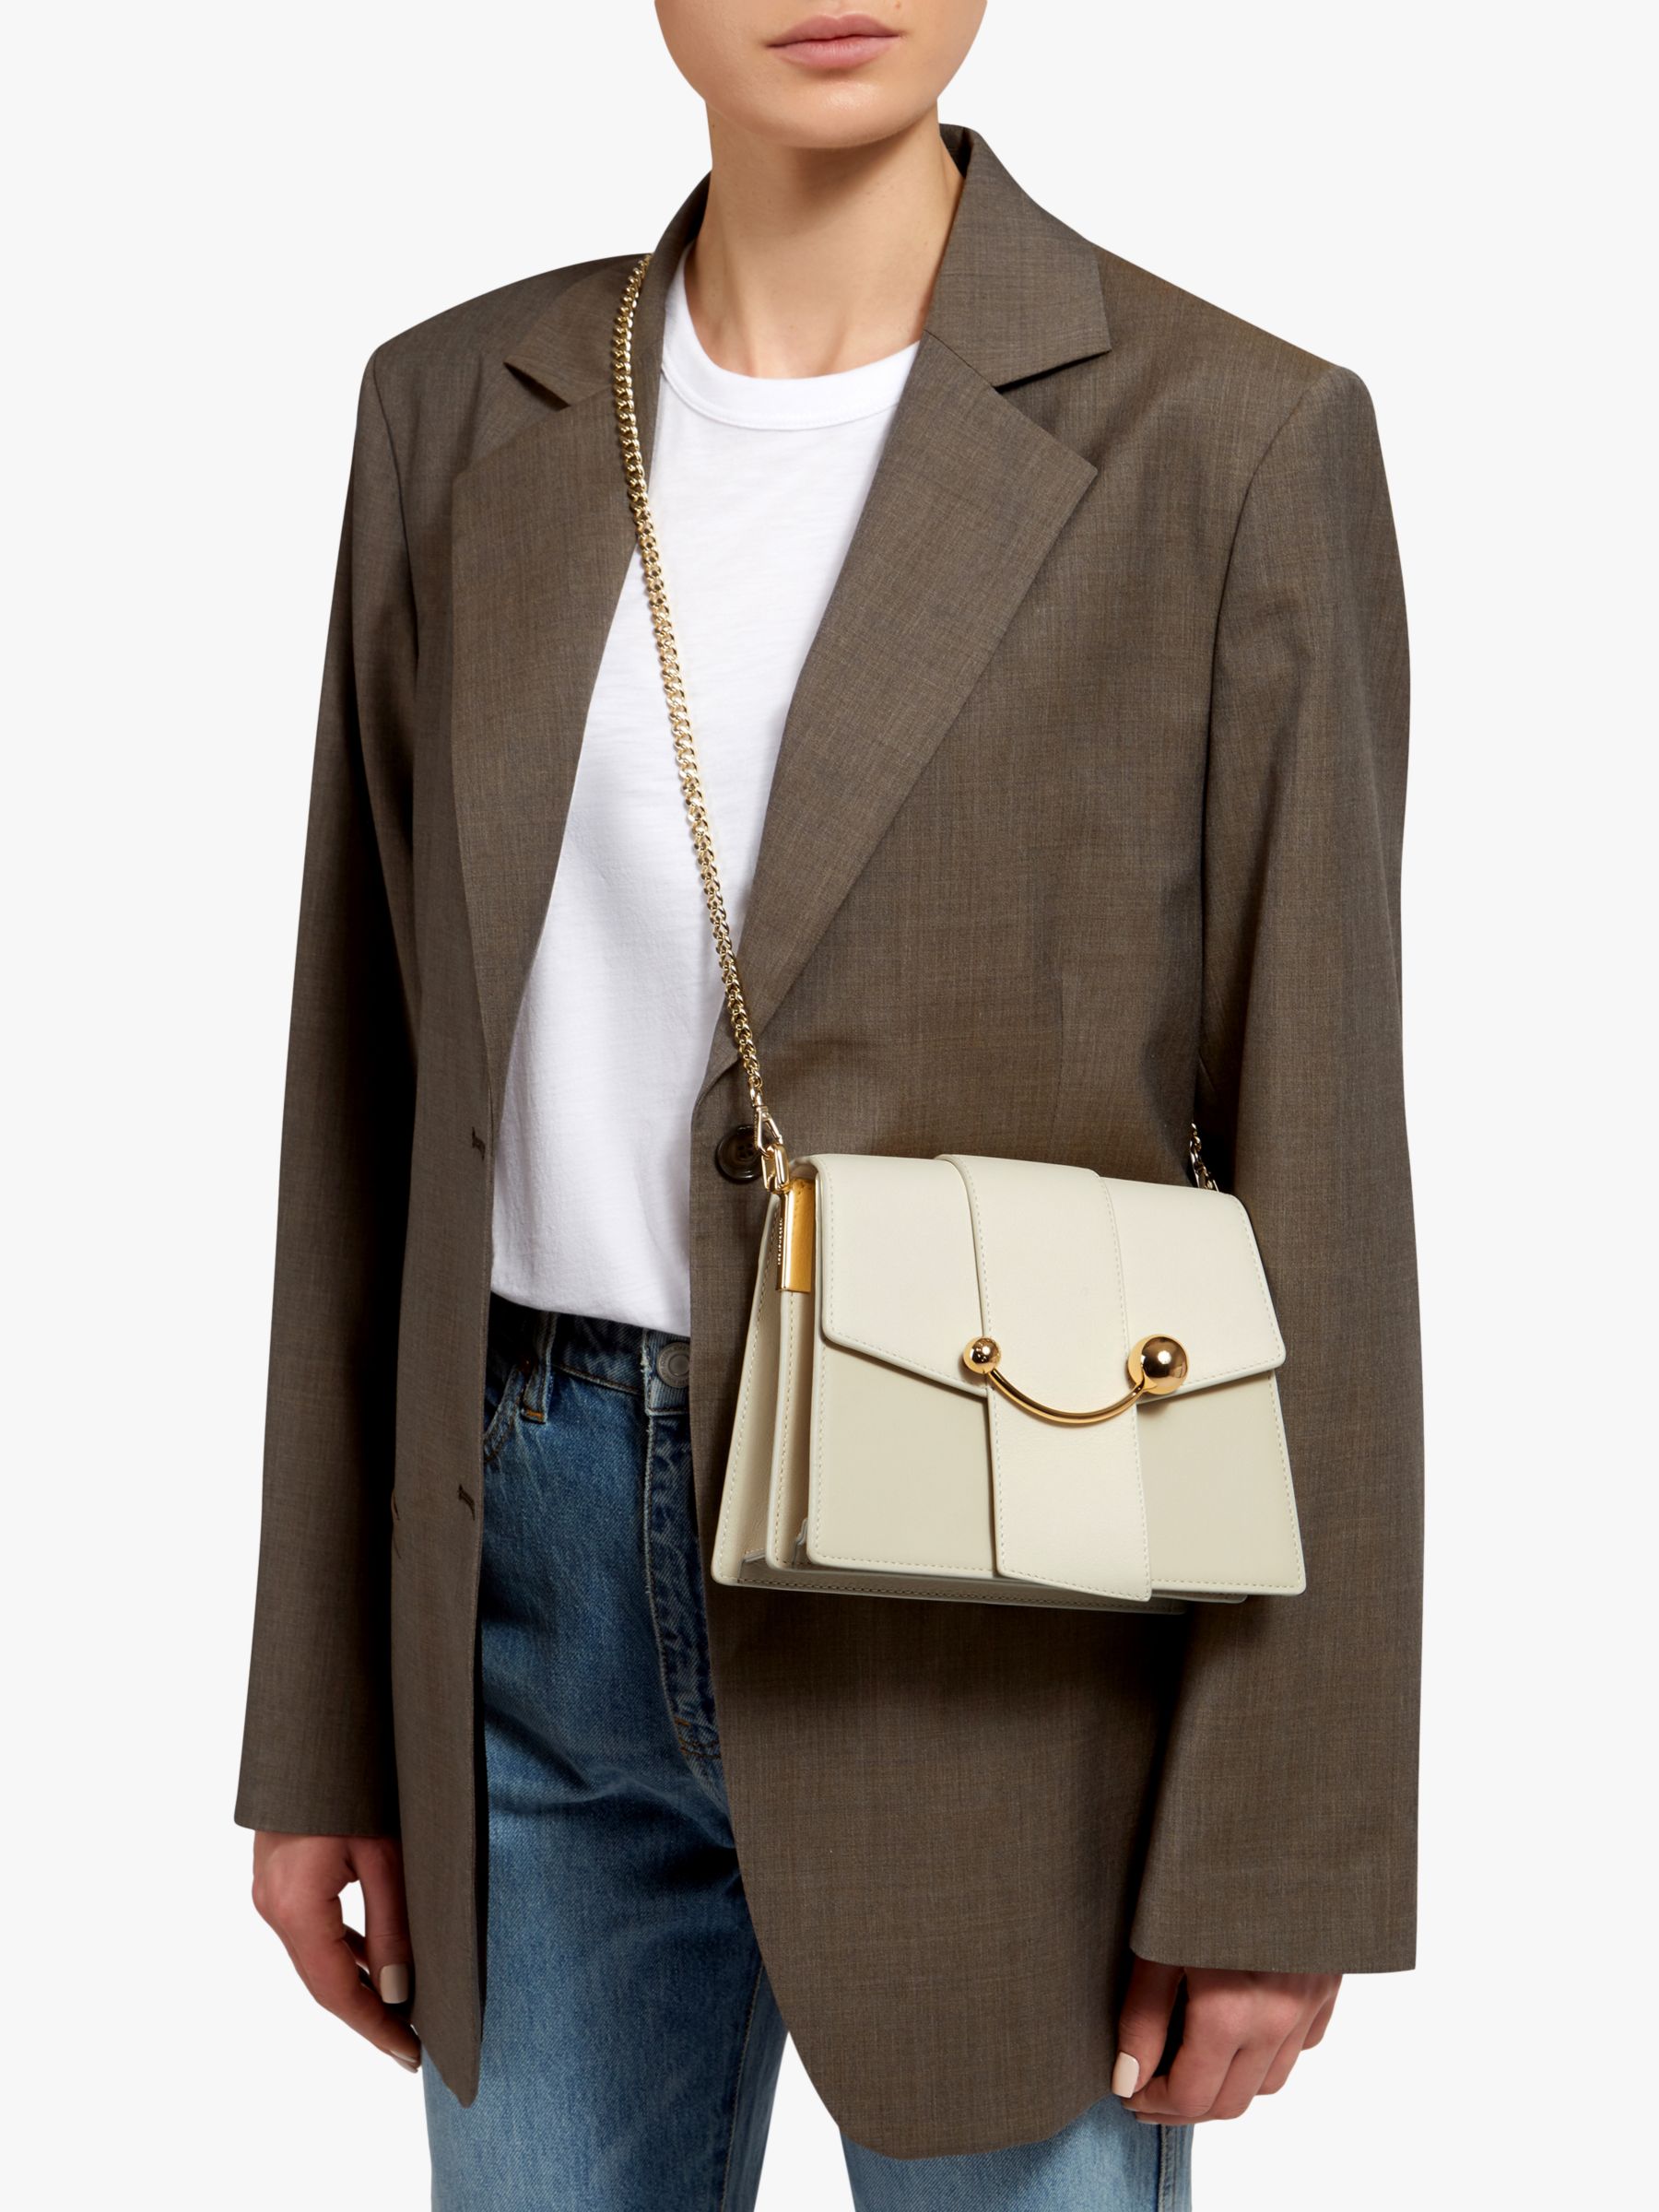 Buy Strathberry Box Crescent Leather Shoulder Bag Online at johnlewis.com